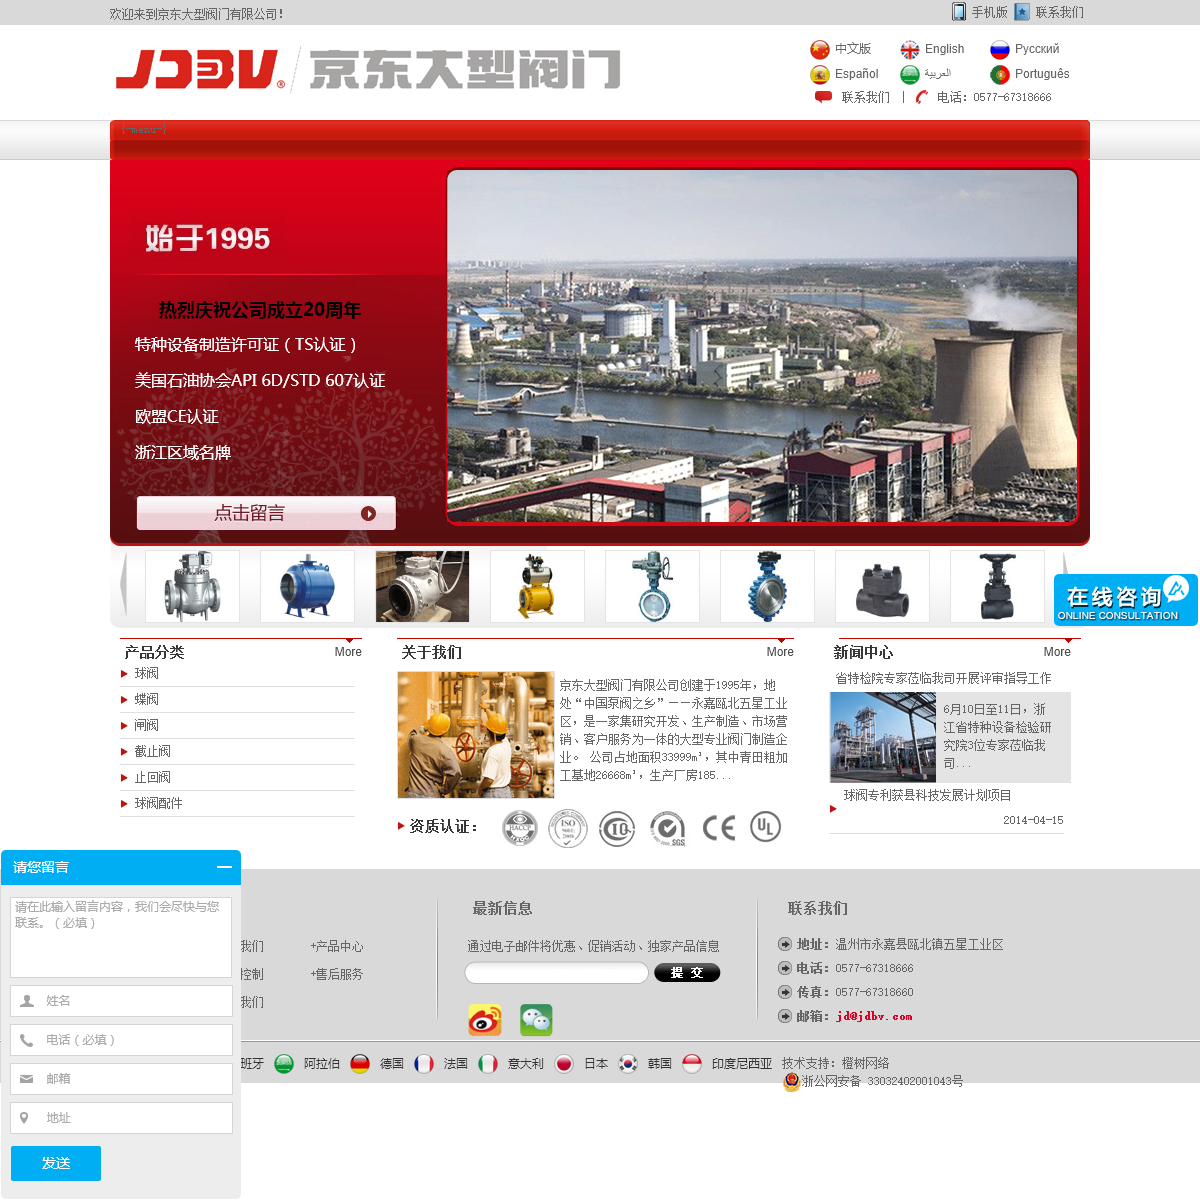 A complete backup of jdbv.com.cn